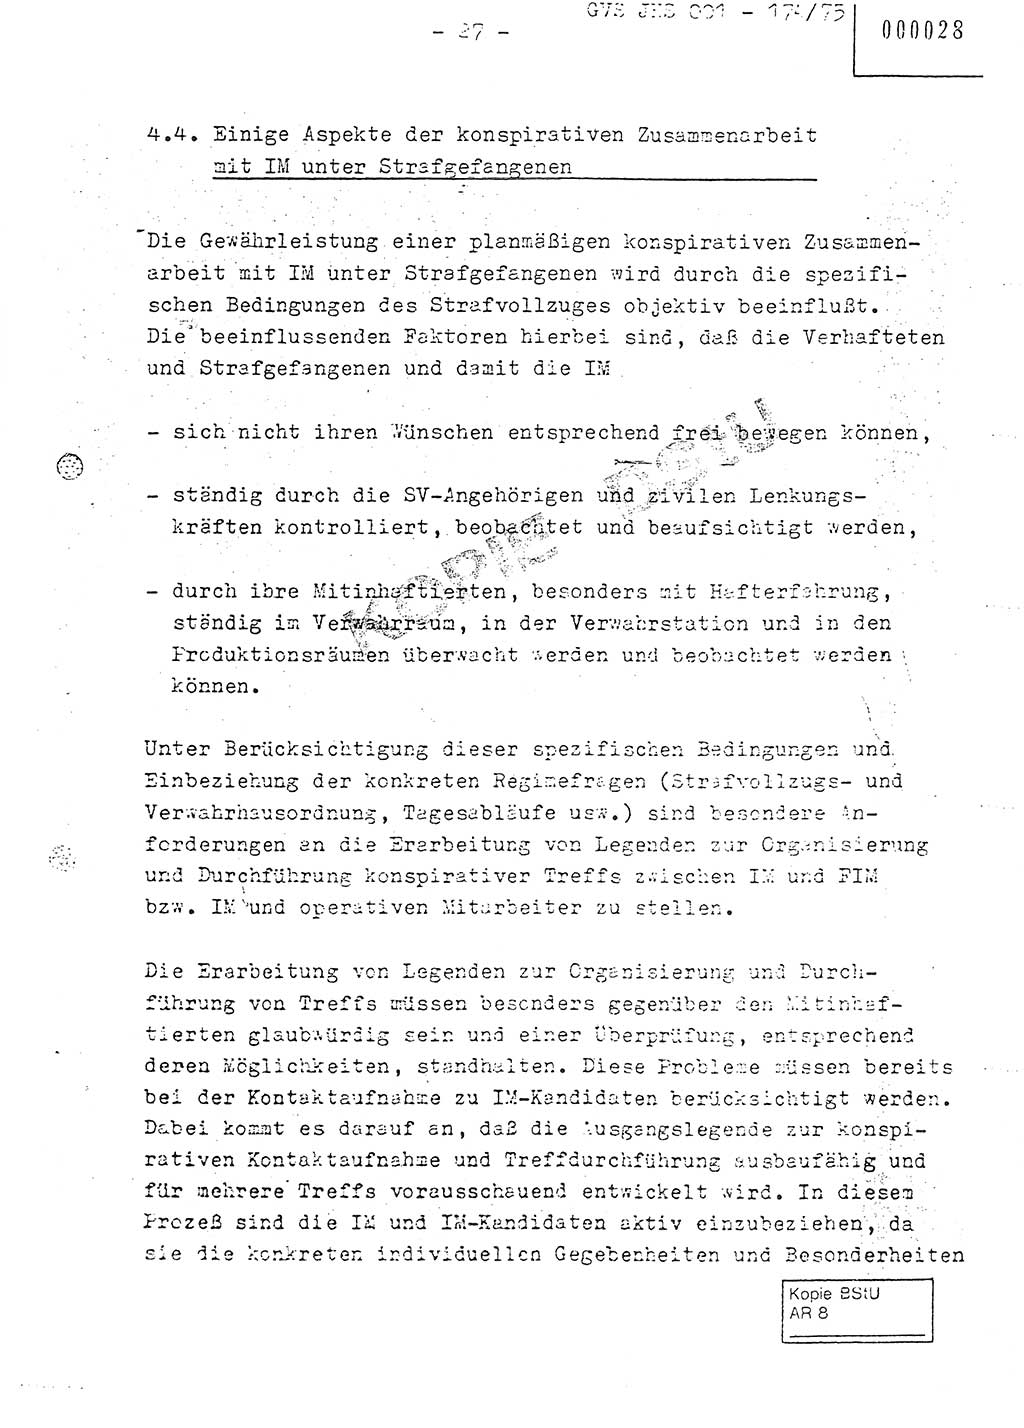 Fachschulabschlußarbeit Oberleutnant Adolf Cichon (Abt. Ⅶ), Ministerium für Staatssicherheit (MfS) [Deutsche Demokratische Republik (DDR)], Juristische Hochschule (JHS), Geheime Verschlußsache (GVS) 001-174/75, Potsdam 1976, Seite 27 (FS-Abschl.-Arb. MfS DDR JHS GVS 001-174/75 1976, S. 27)